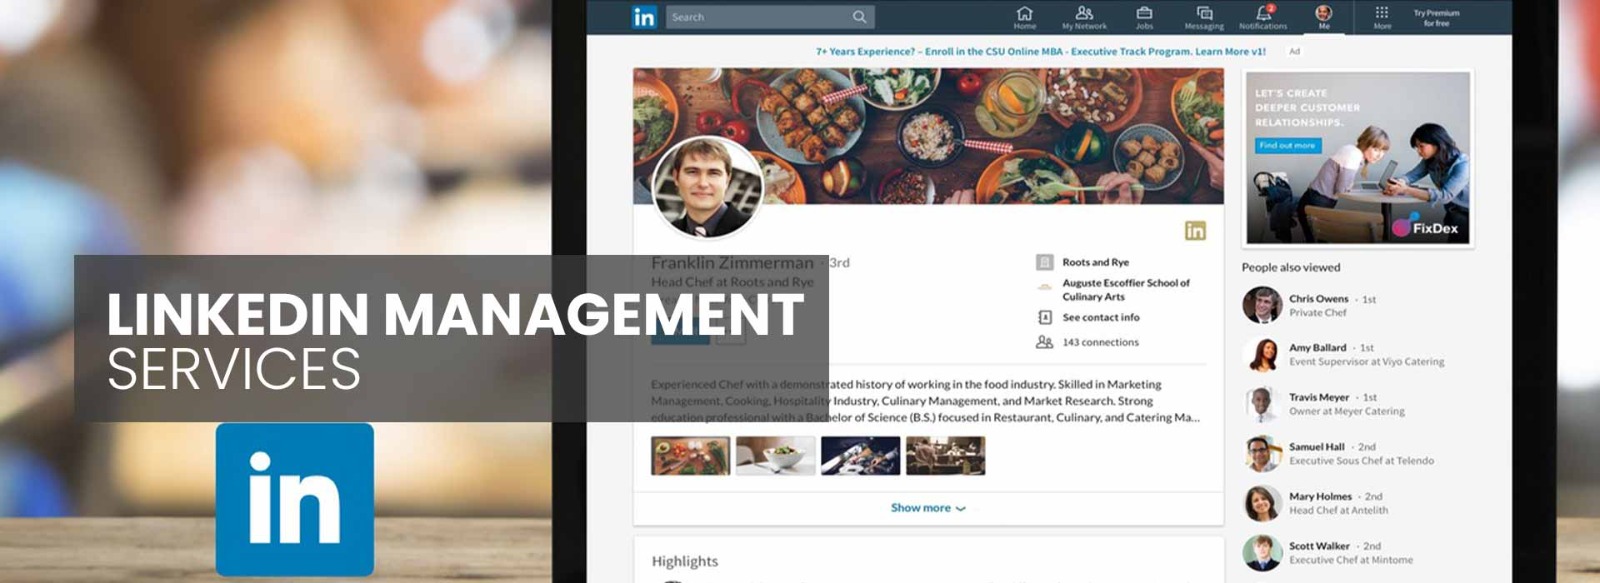 LinkedIn Management Service